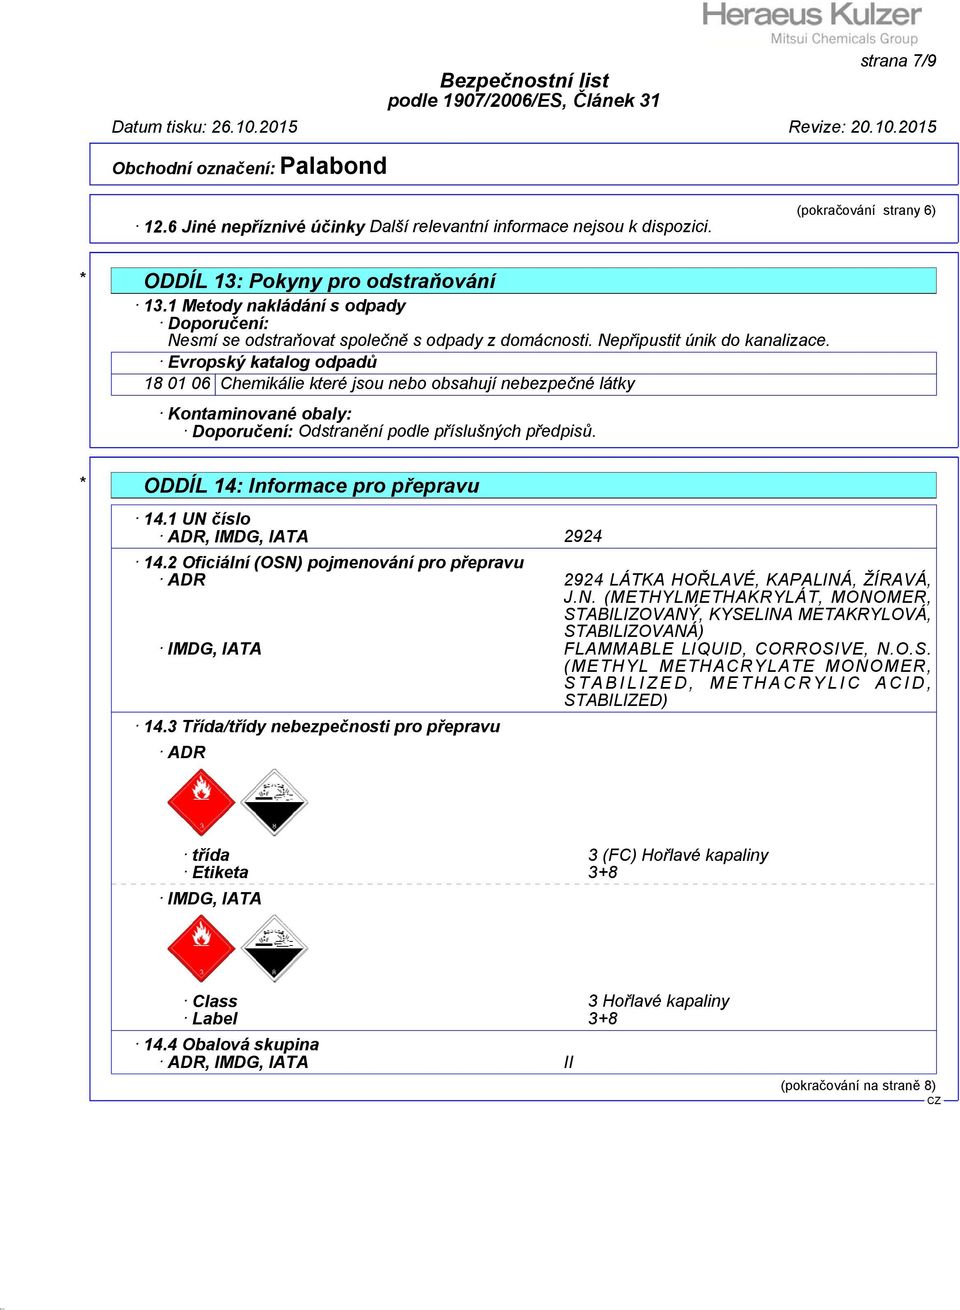 Evropský katalog odpadů 18 01 06 Chemikálie které jsou nebo obsahují nebezpečné látky Kontaminované obaly: Doporučení: Odstranění podle příslušných předpisů. * ODDÍL 14: Informace pro přepravu 14.